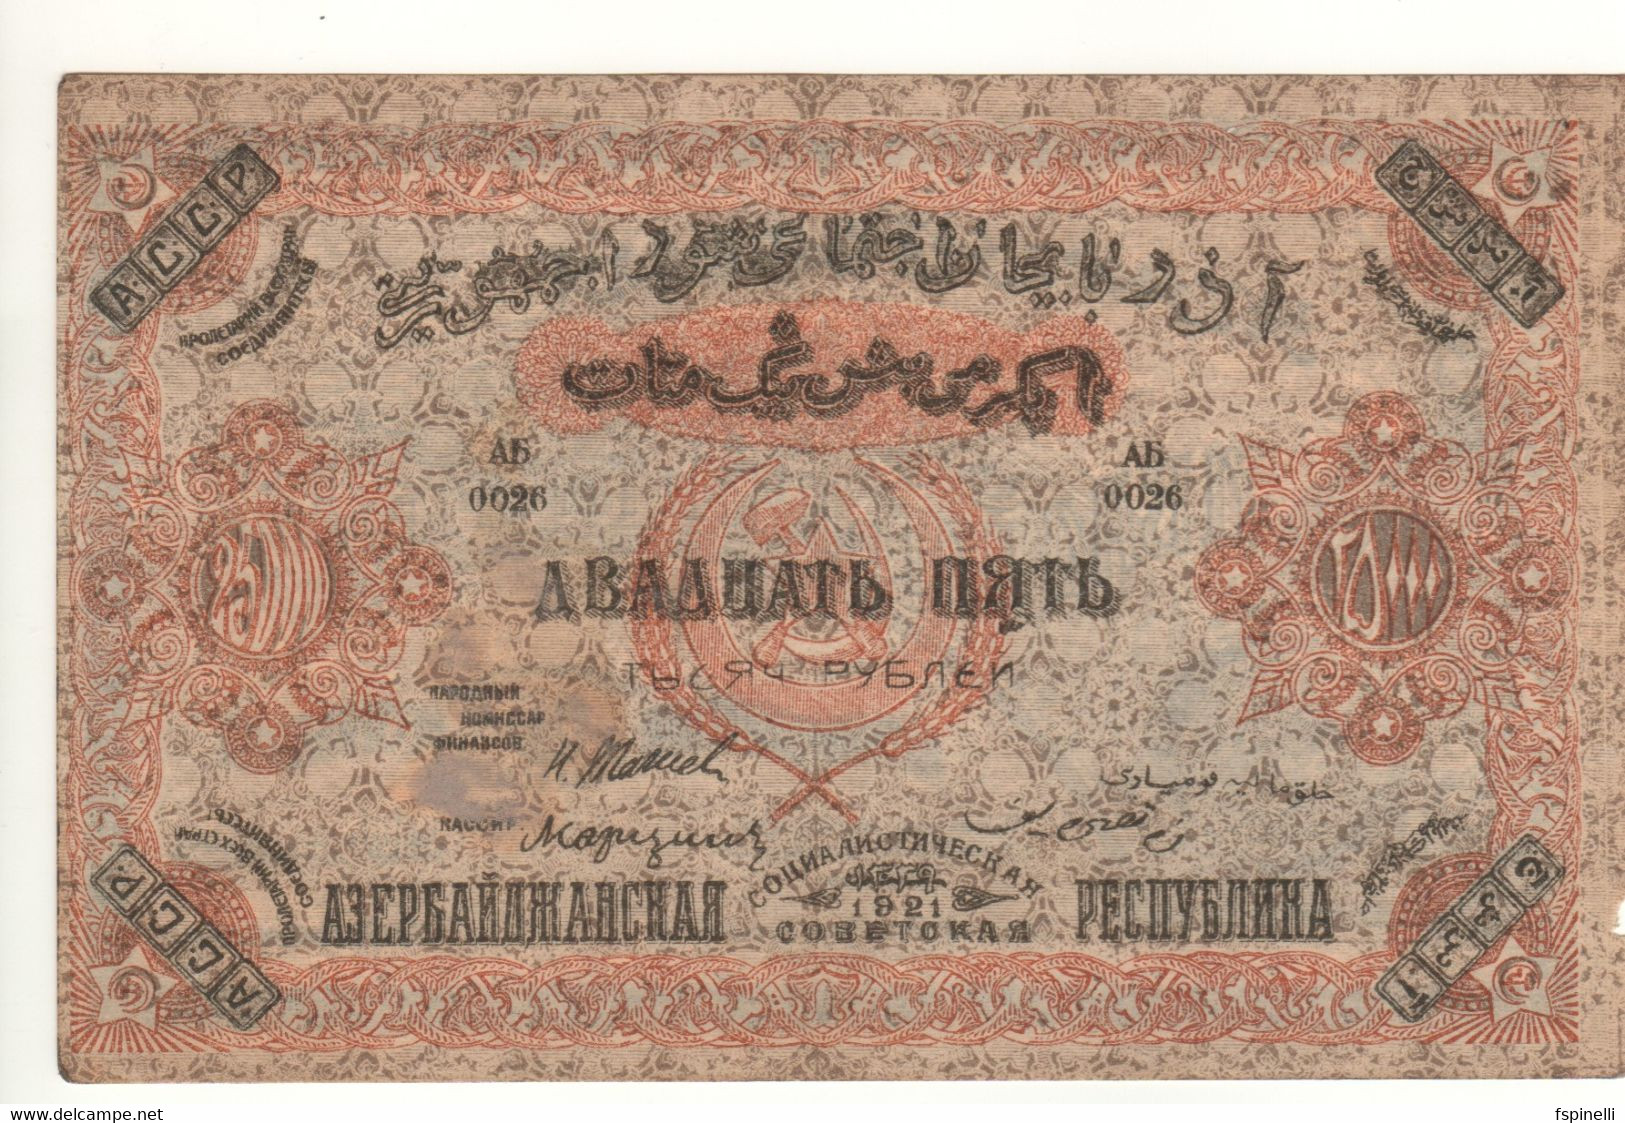 AZERBAIJAN  25'000 Rubley/Manat  PS715a  1921   RUSSIA  (Socialist Soviet Republic) - Azerbaïdjan